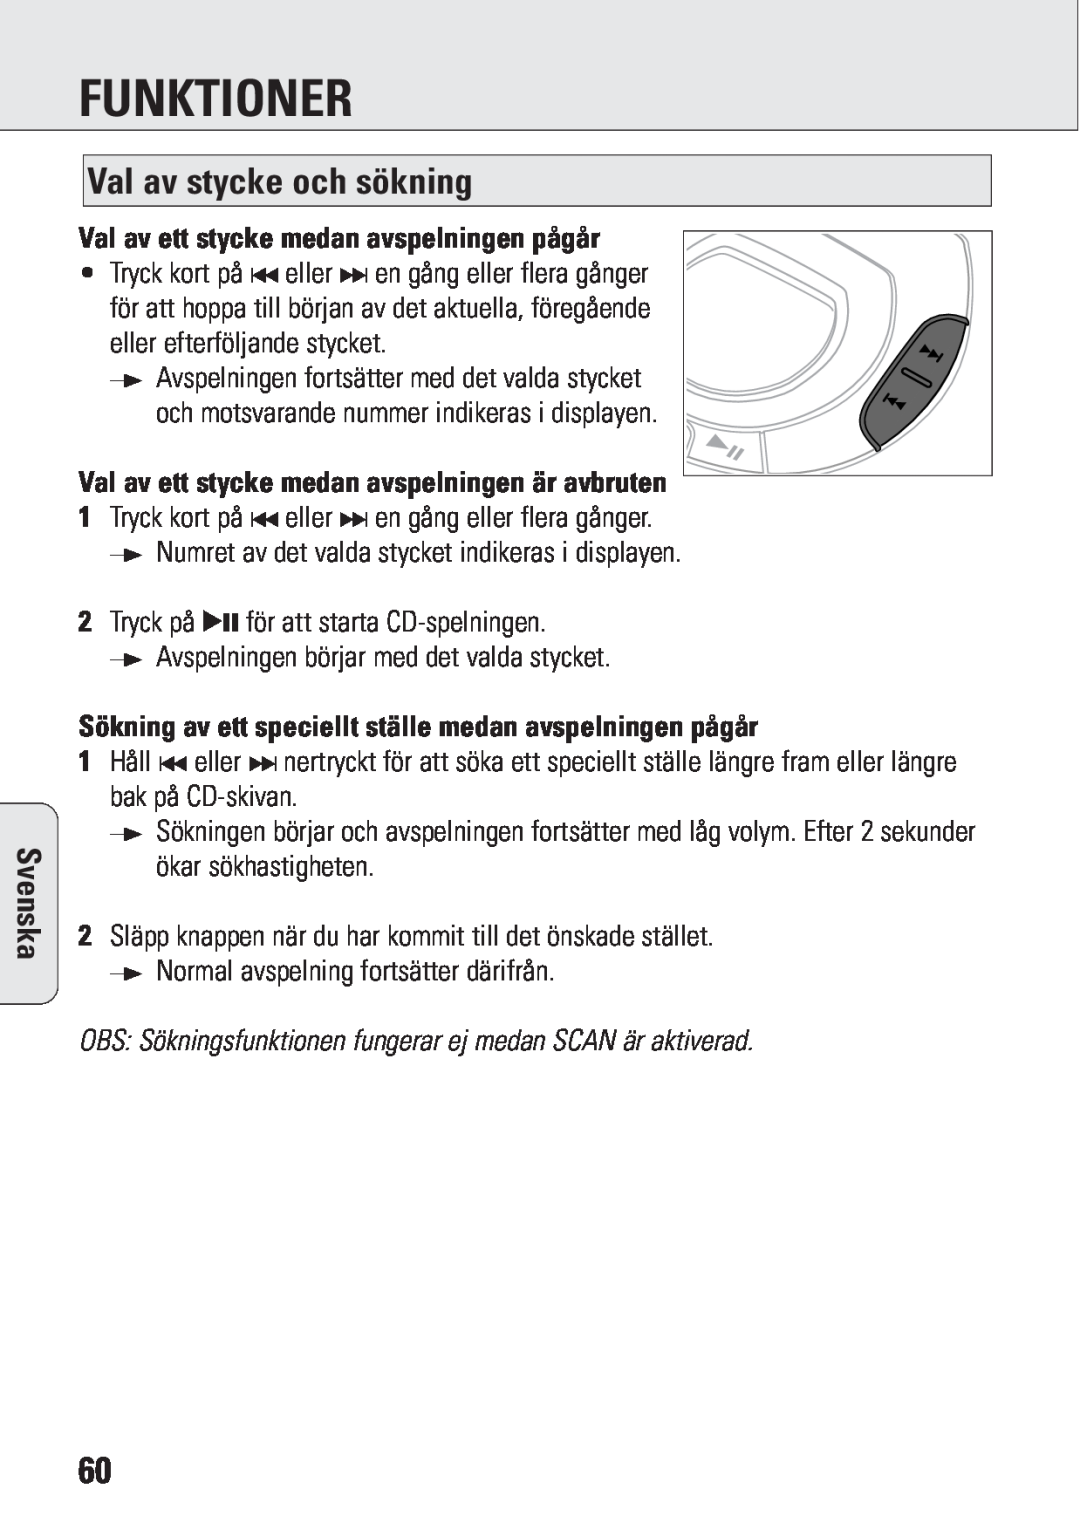 Philips ACT 7583 manual Funktioner, Val av stycke och sökning, Val av ett stycke medan avspelningen pågår, Svenska 